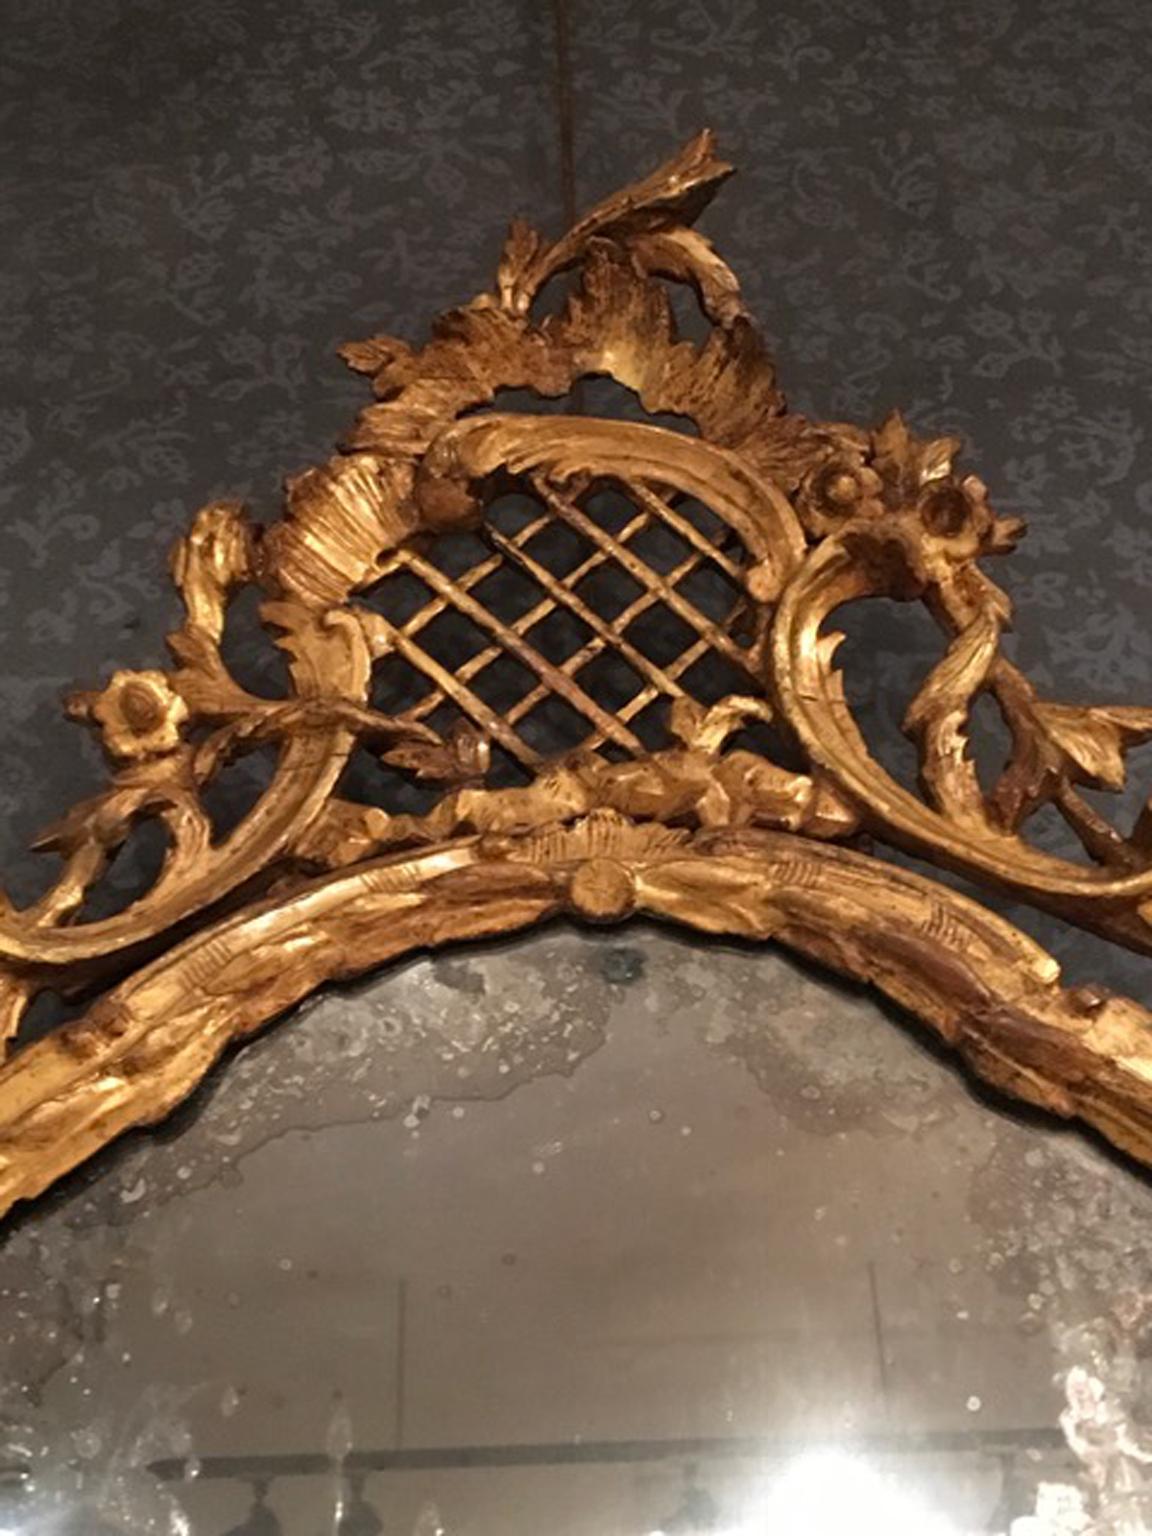 Wichtiger und schöner italienischer Barockspiegel, handgefertigt in goldenem Holz mit reich geschnitzten Details. Der Quecksilberspiegel ist in sehr gutem Zustand. Der Herkunftsort ist Venedig (Venezia), Italien
Ein wichtiges Stück, das auch unter